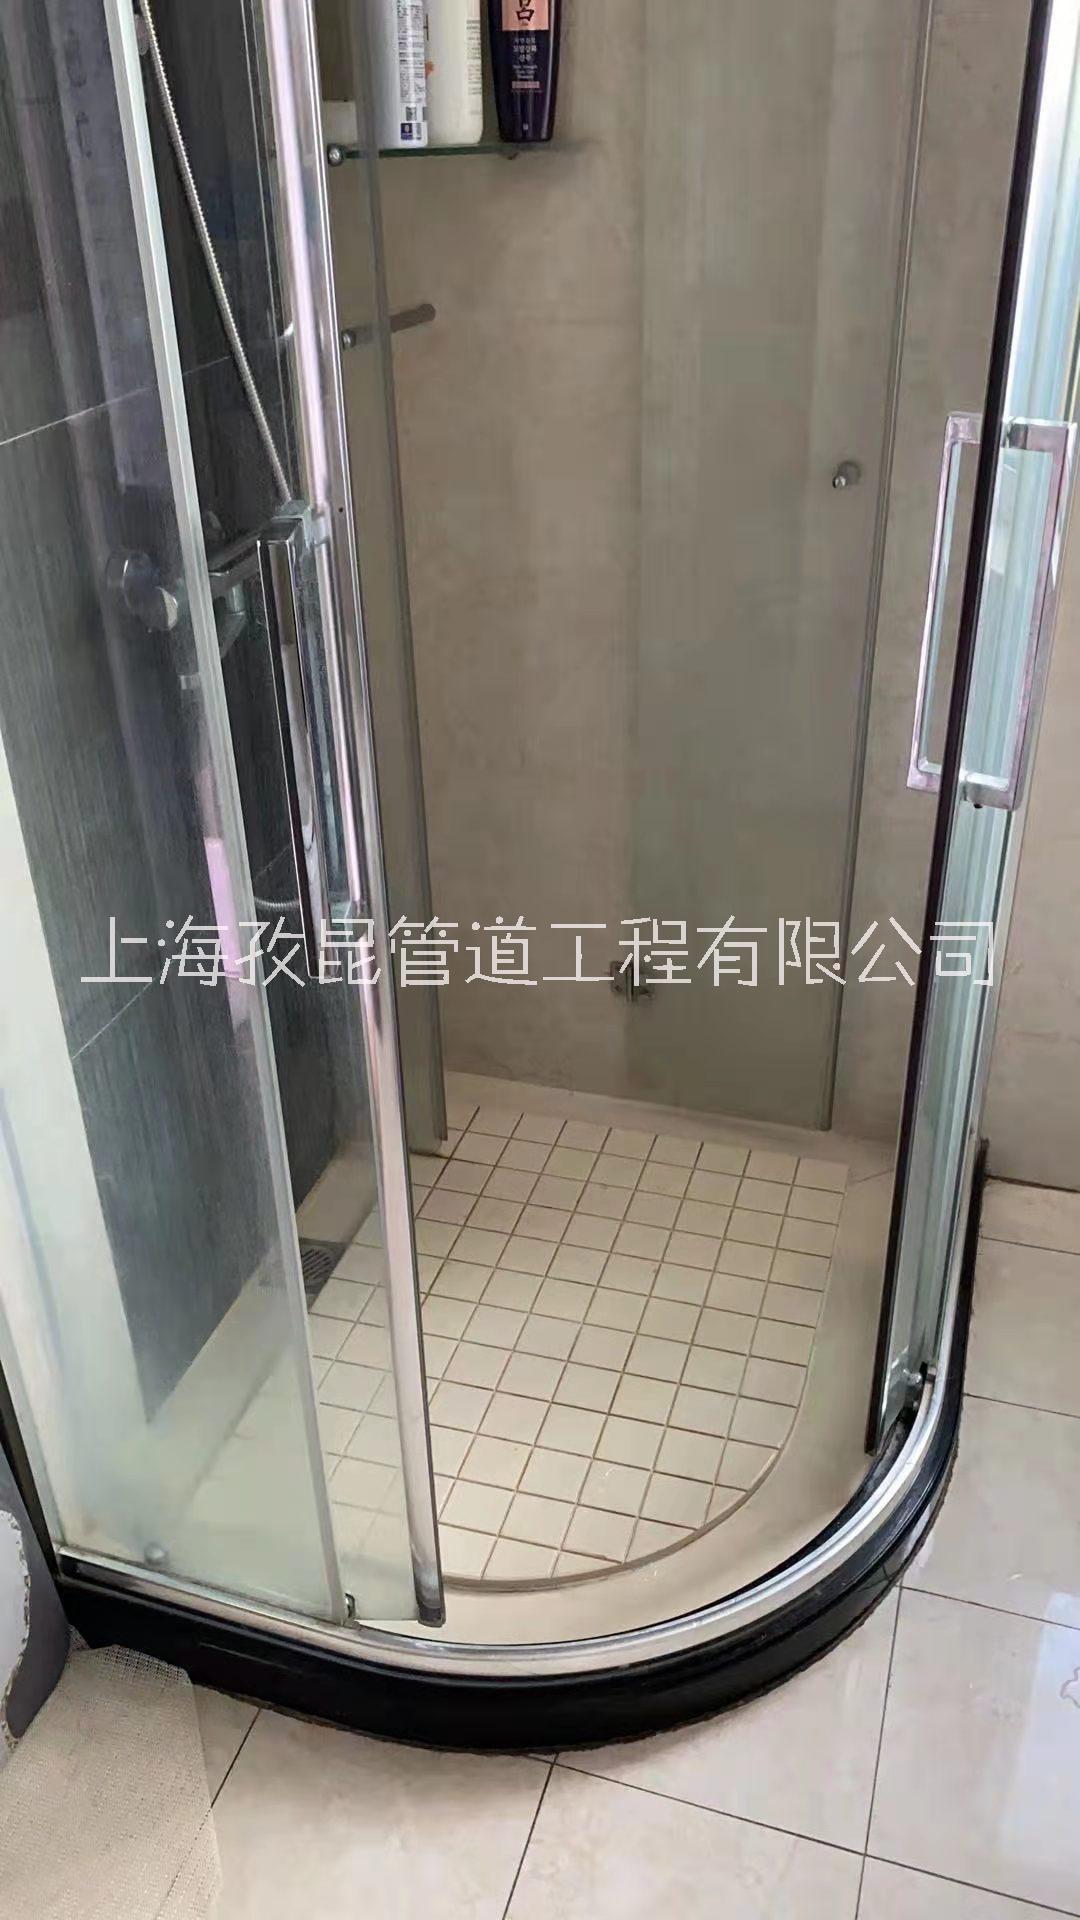 上海通臣淋浴房维修下滑轮 淋浴房移门维修